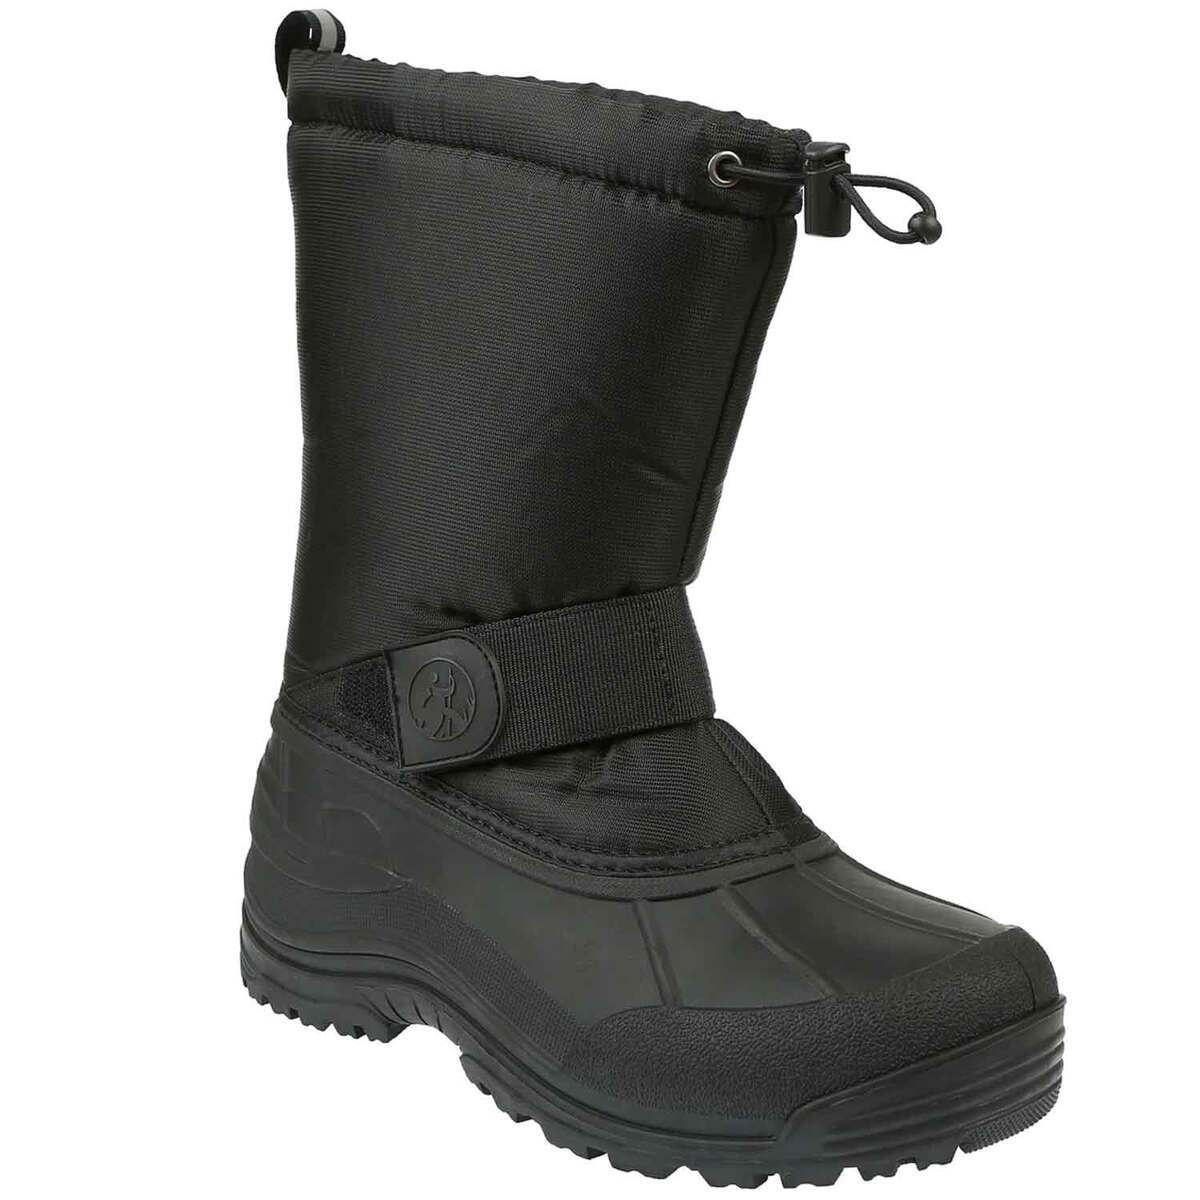 Northside Men's Leavenworth Insulated Waterproof Winter Boots ...